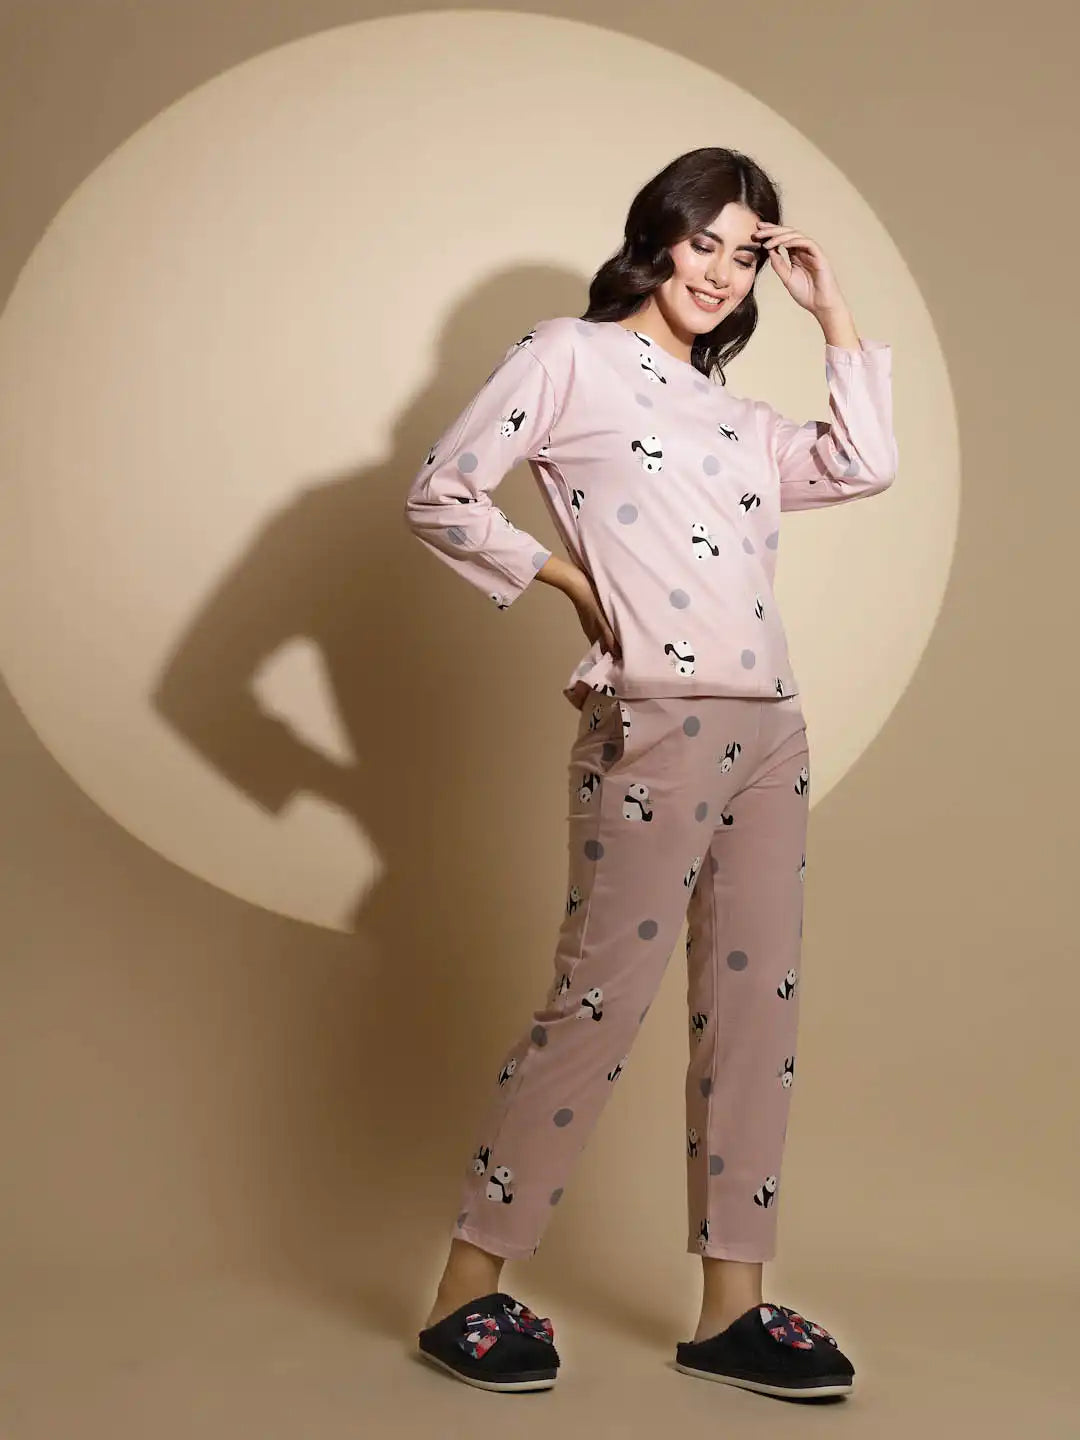 Pink Hosiery Full Sleeve Printed Top & Pyjama Night Suit Set